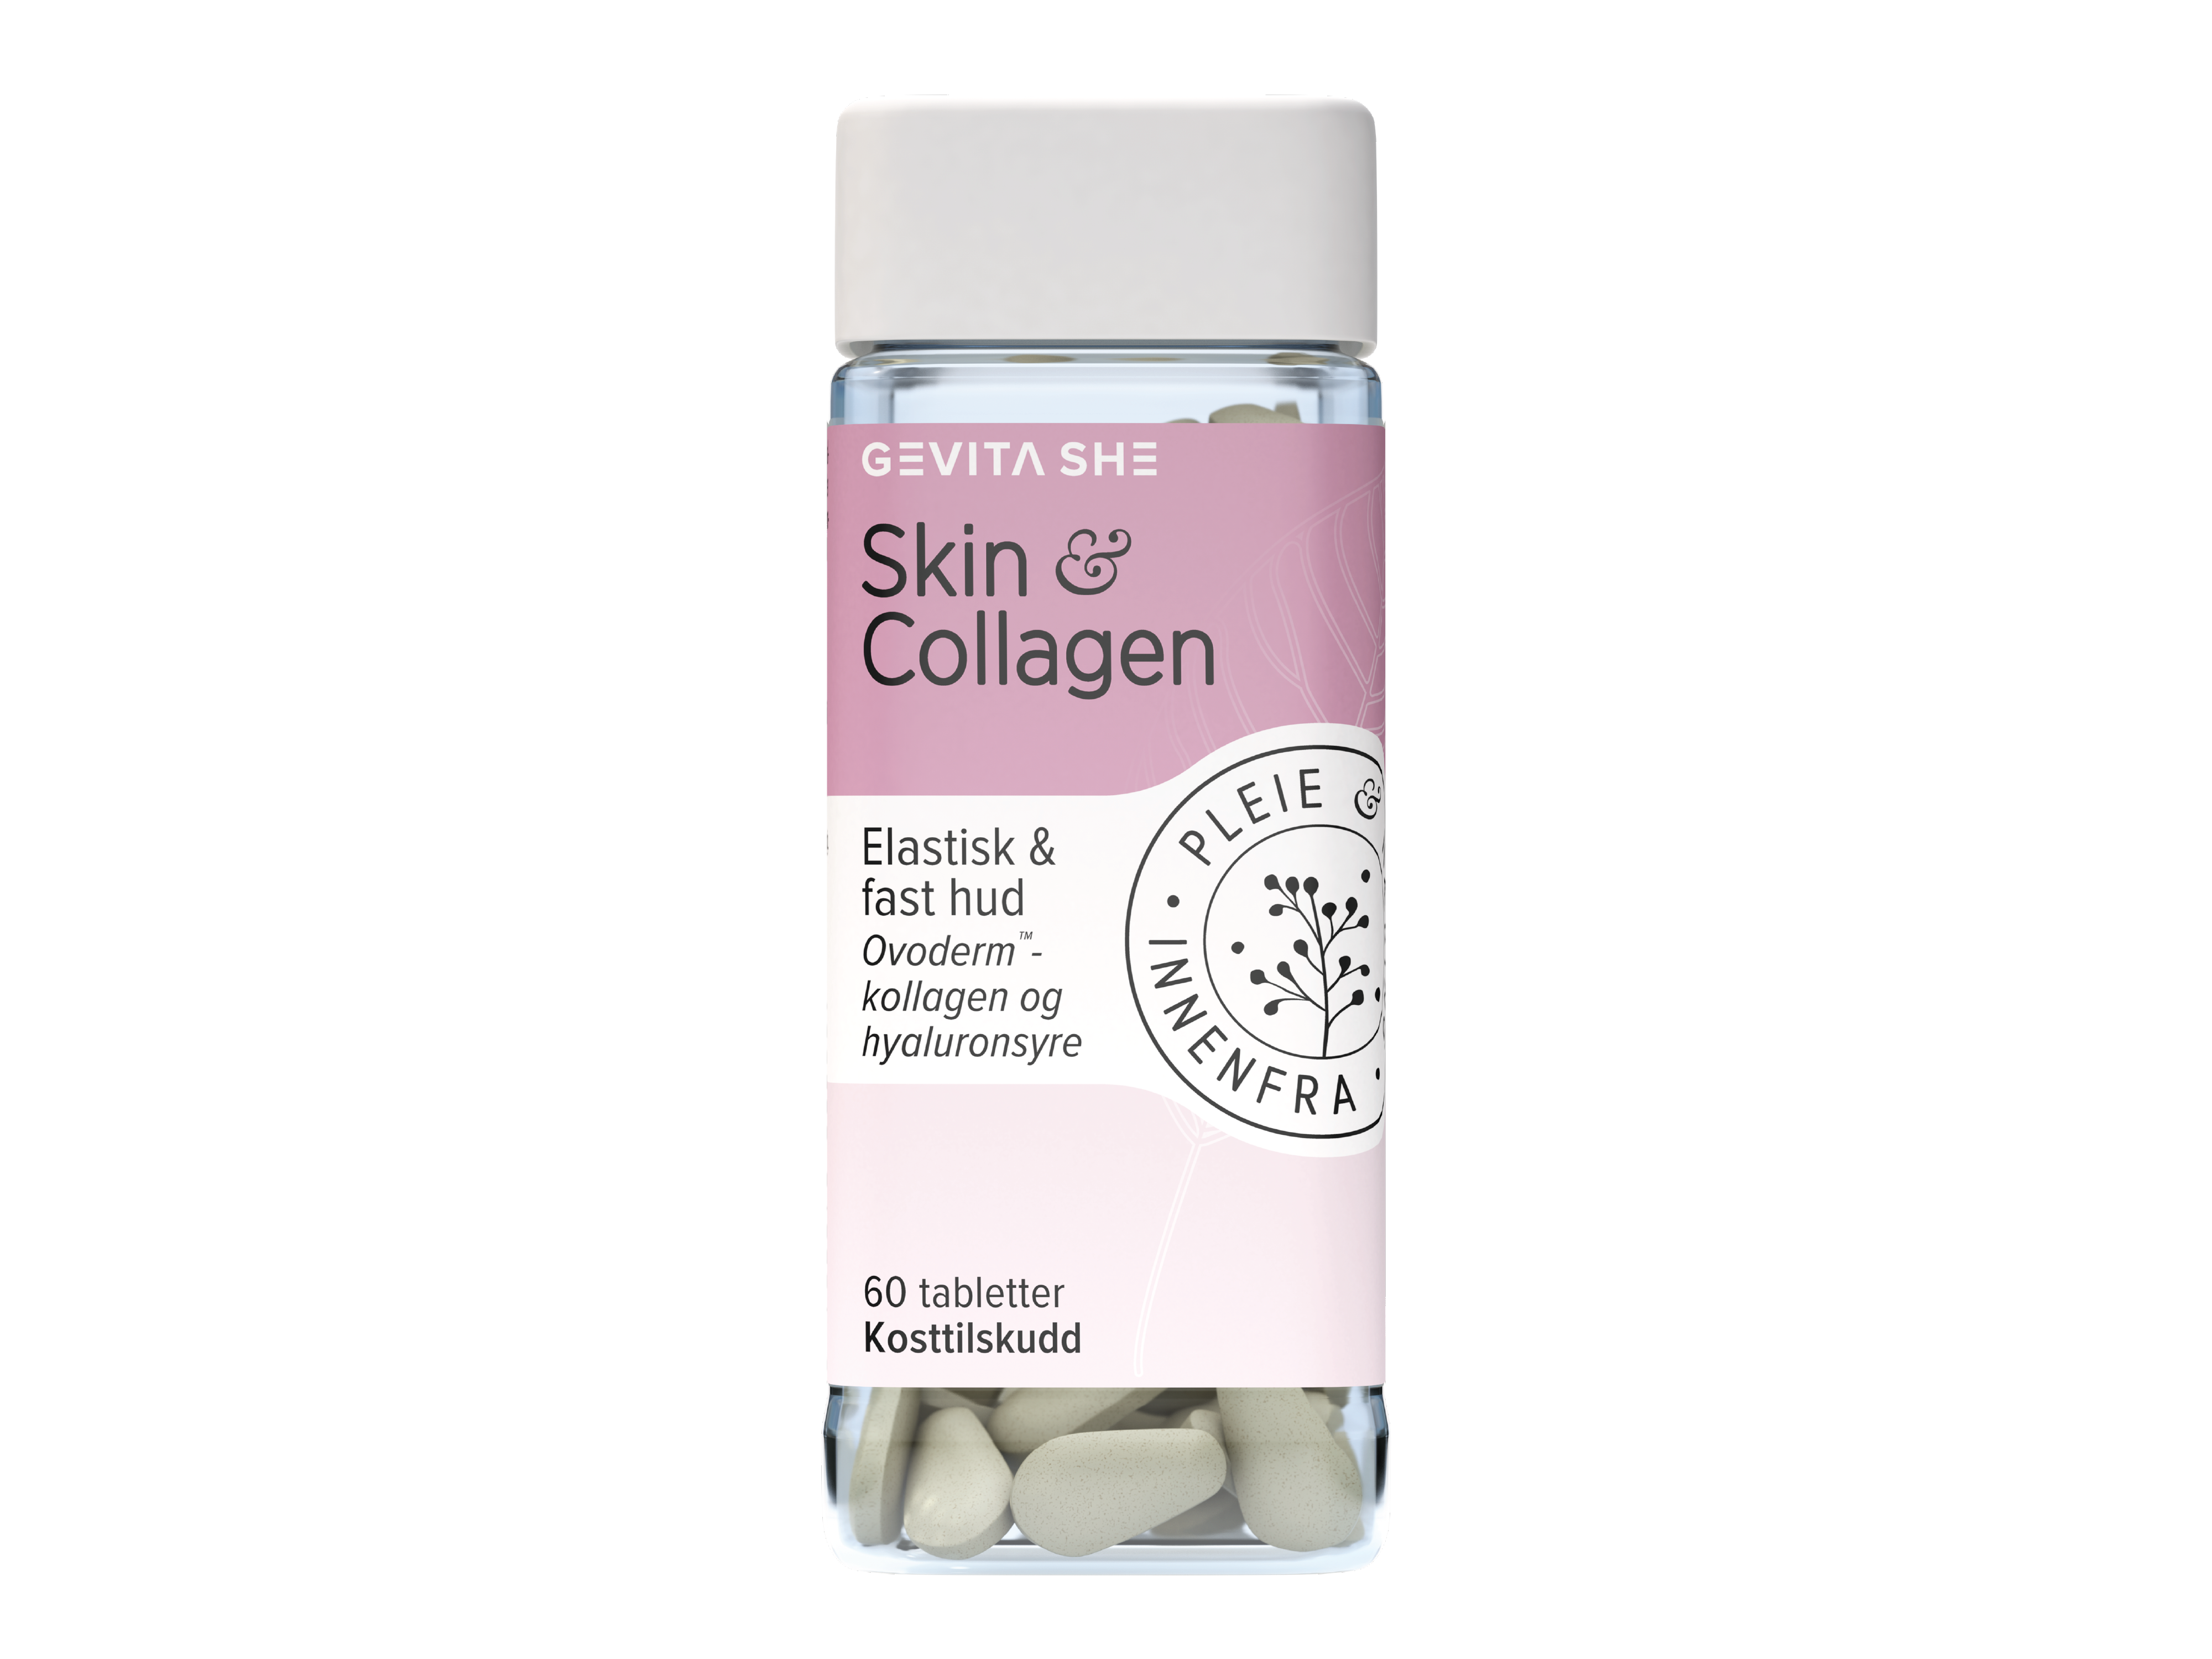 SHE Skin & Collagen, 60 tabletter